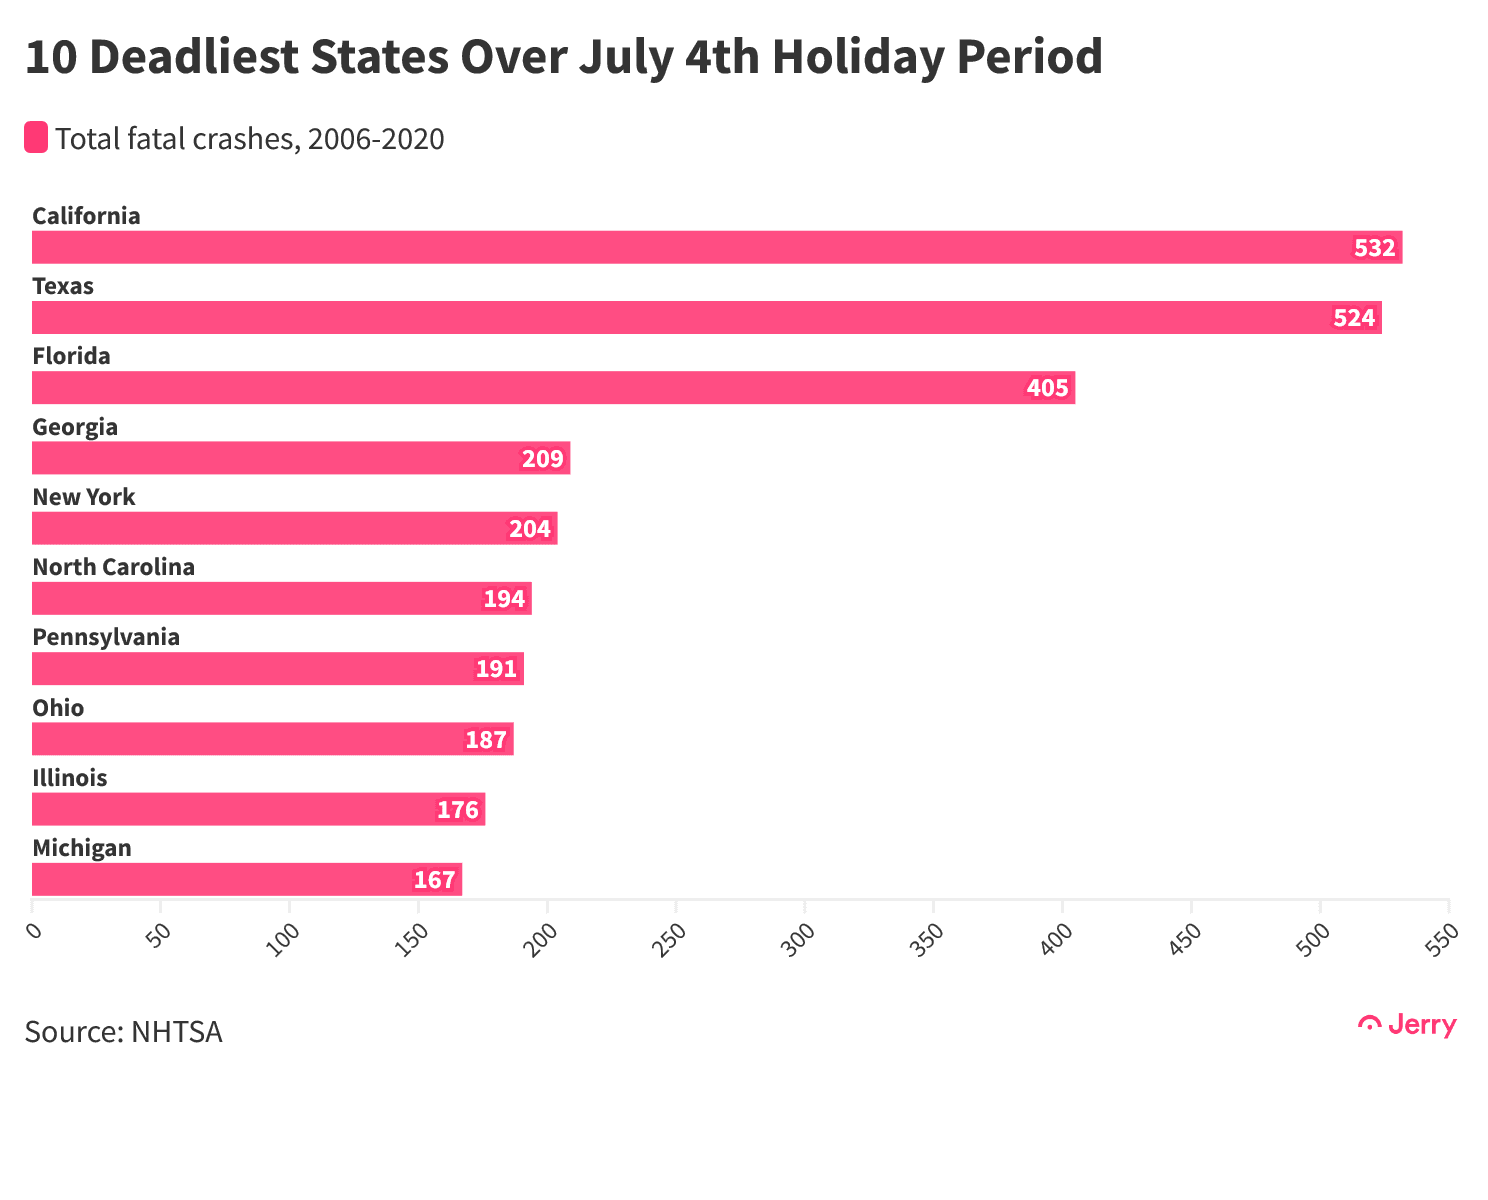 7月4日假期死亡人数最多的10个州Period@2x(1)